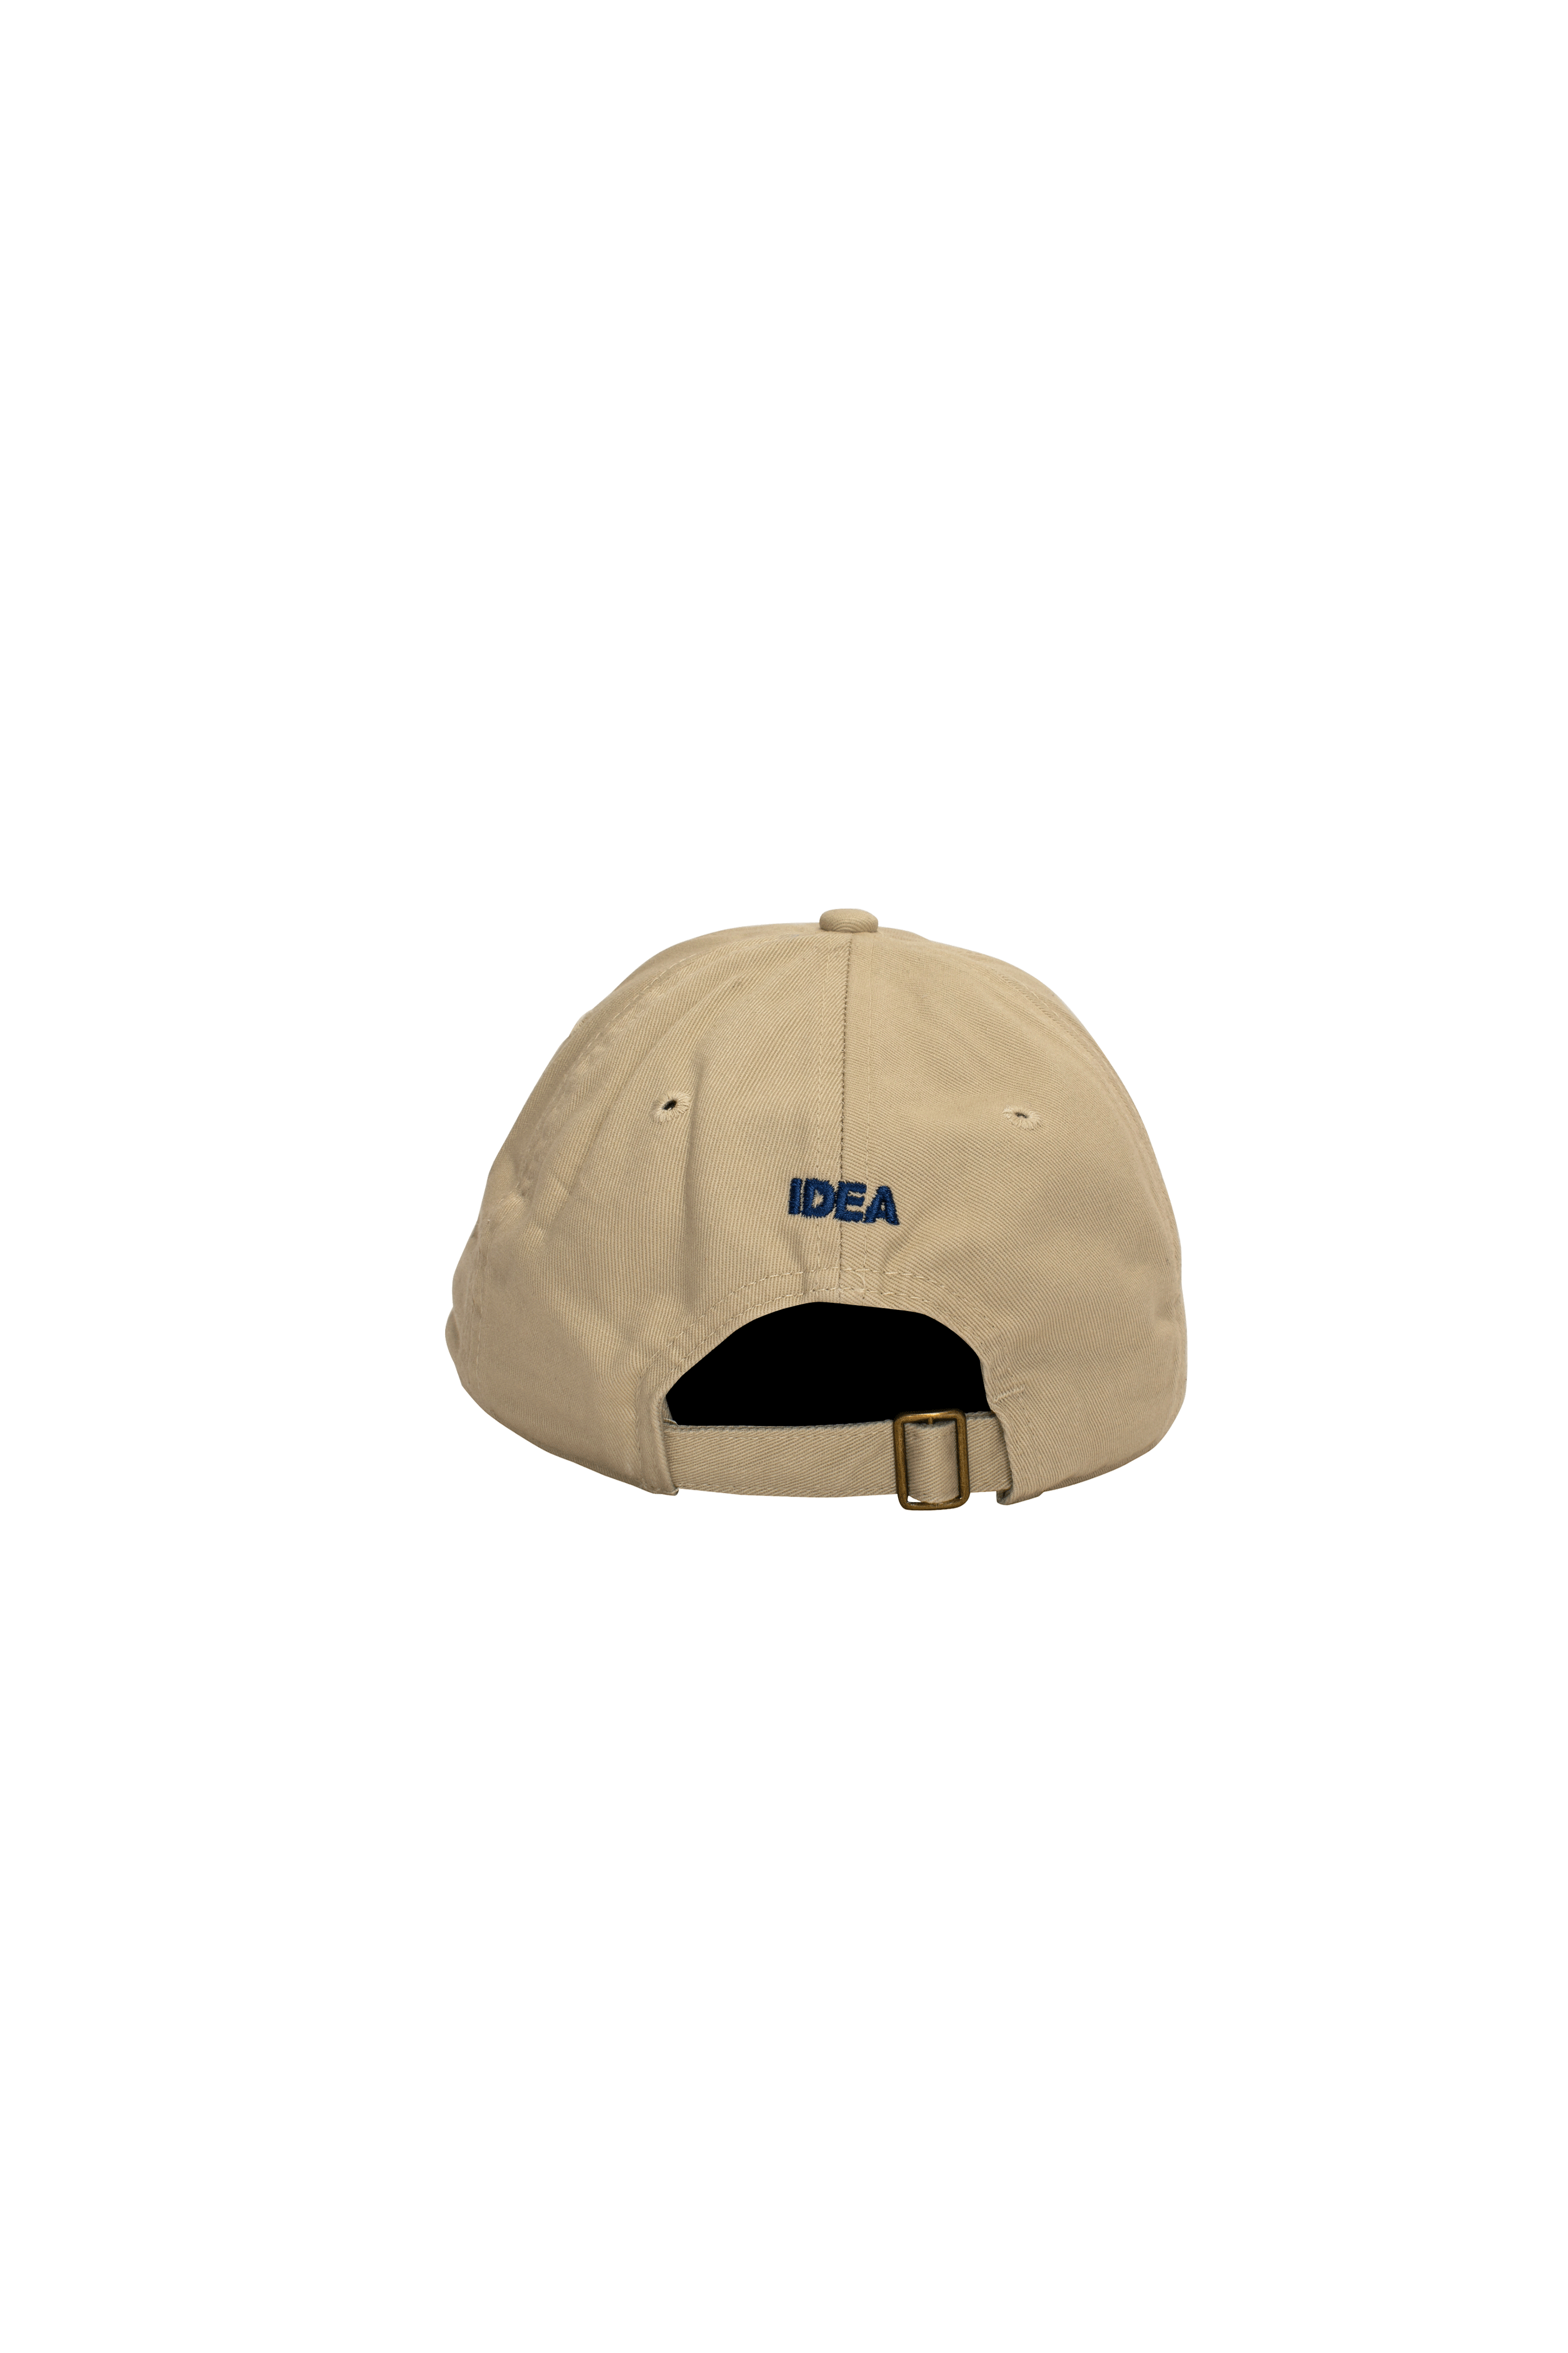 Dicaprio Hat